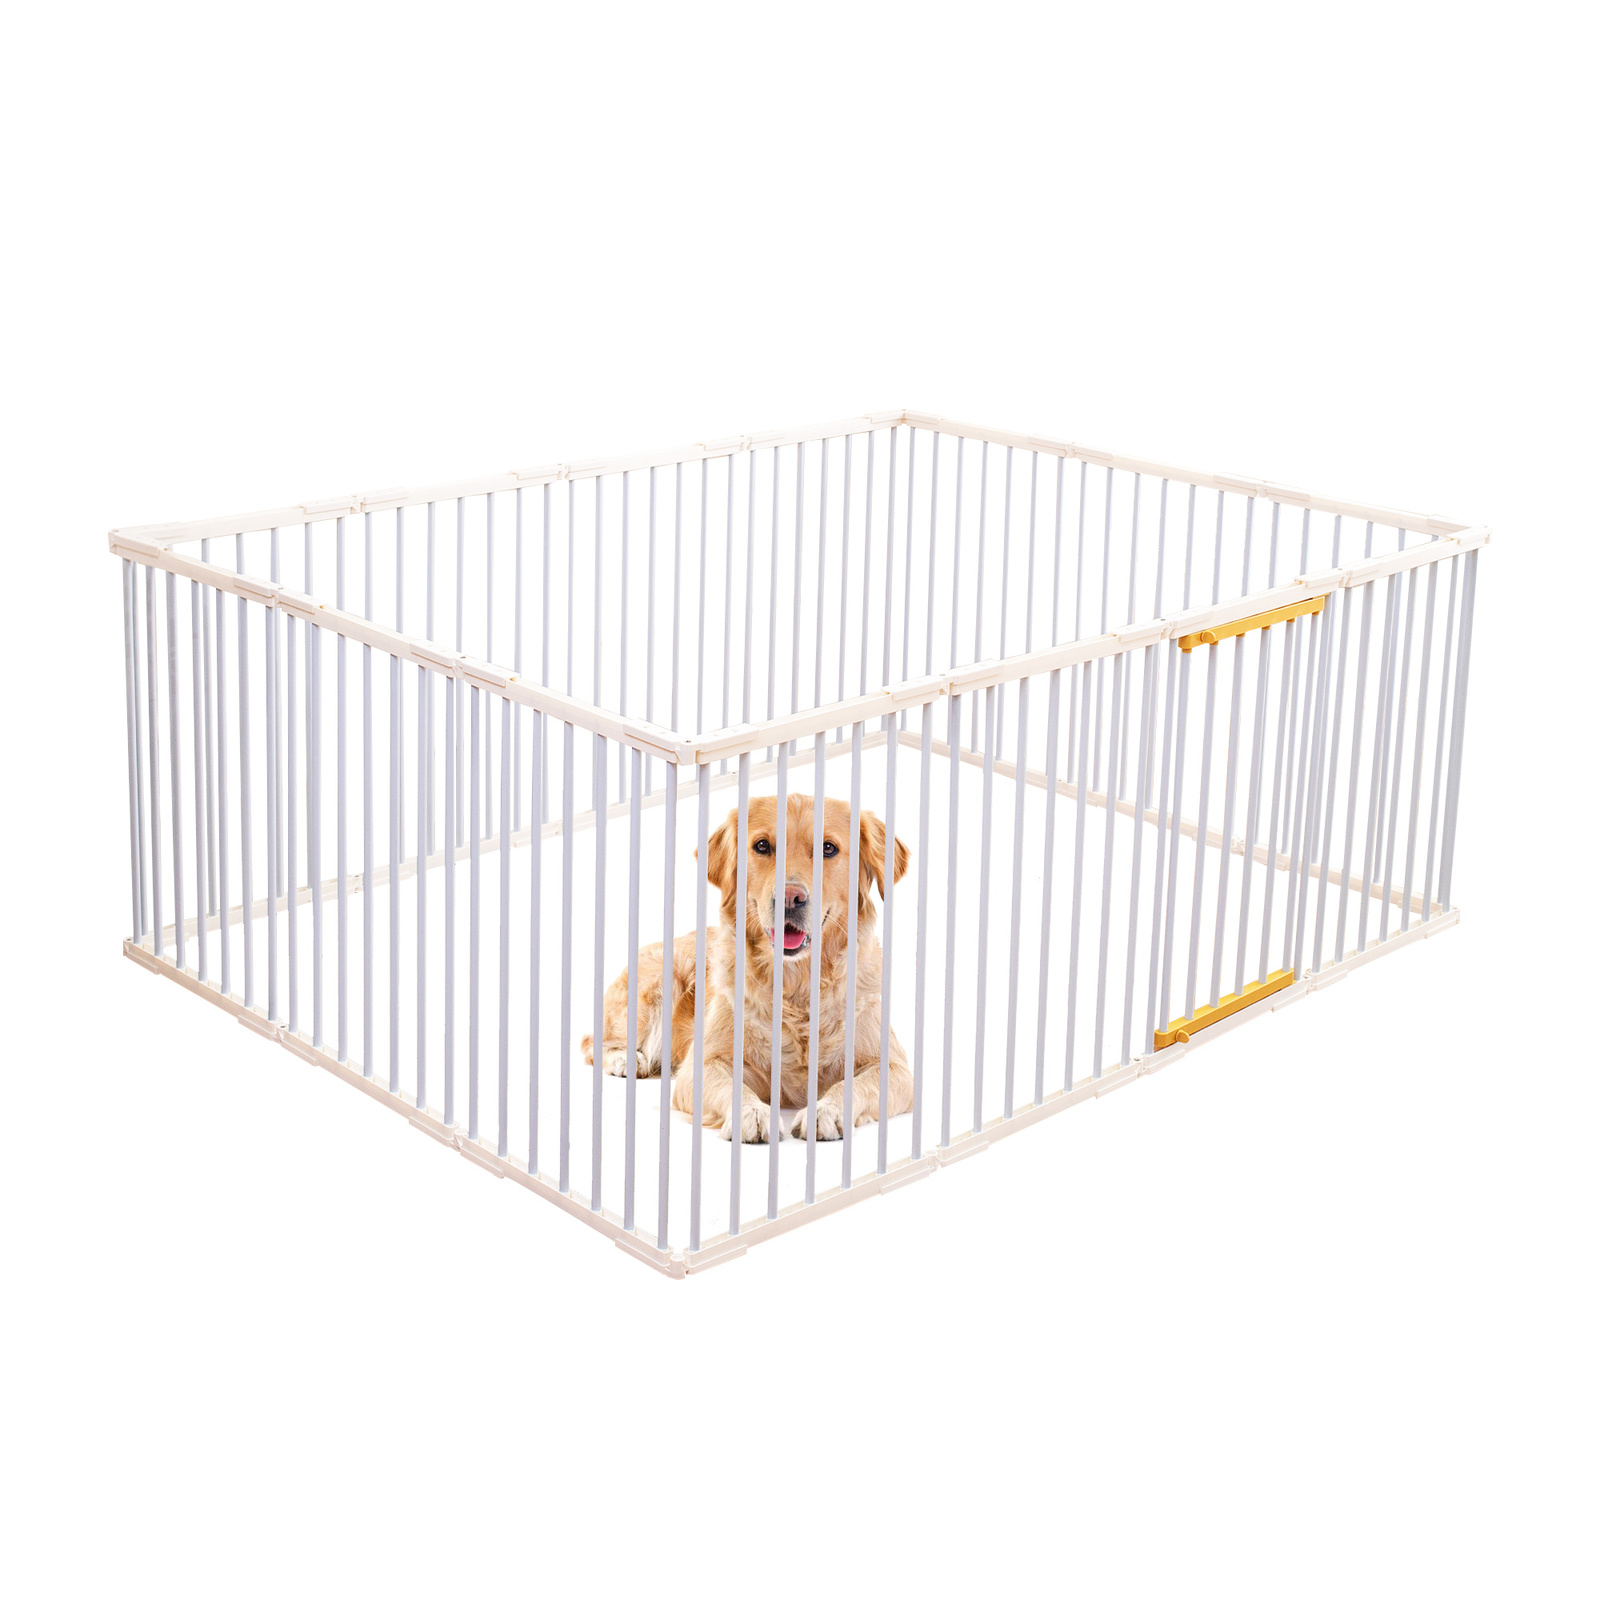 Portable Pet Dog Playpen Enclosure Cage 14 Panels